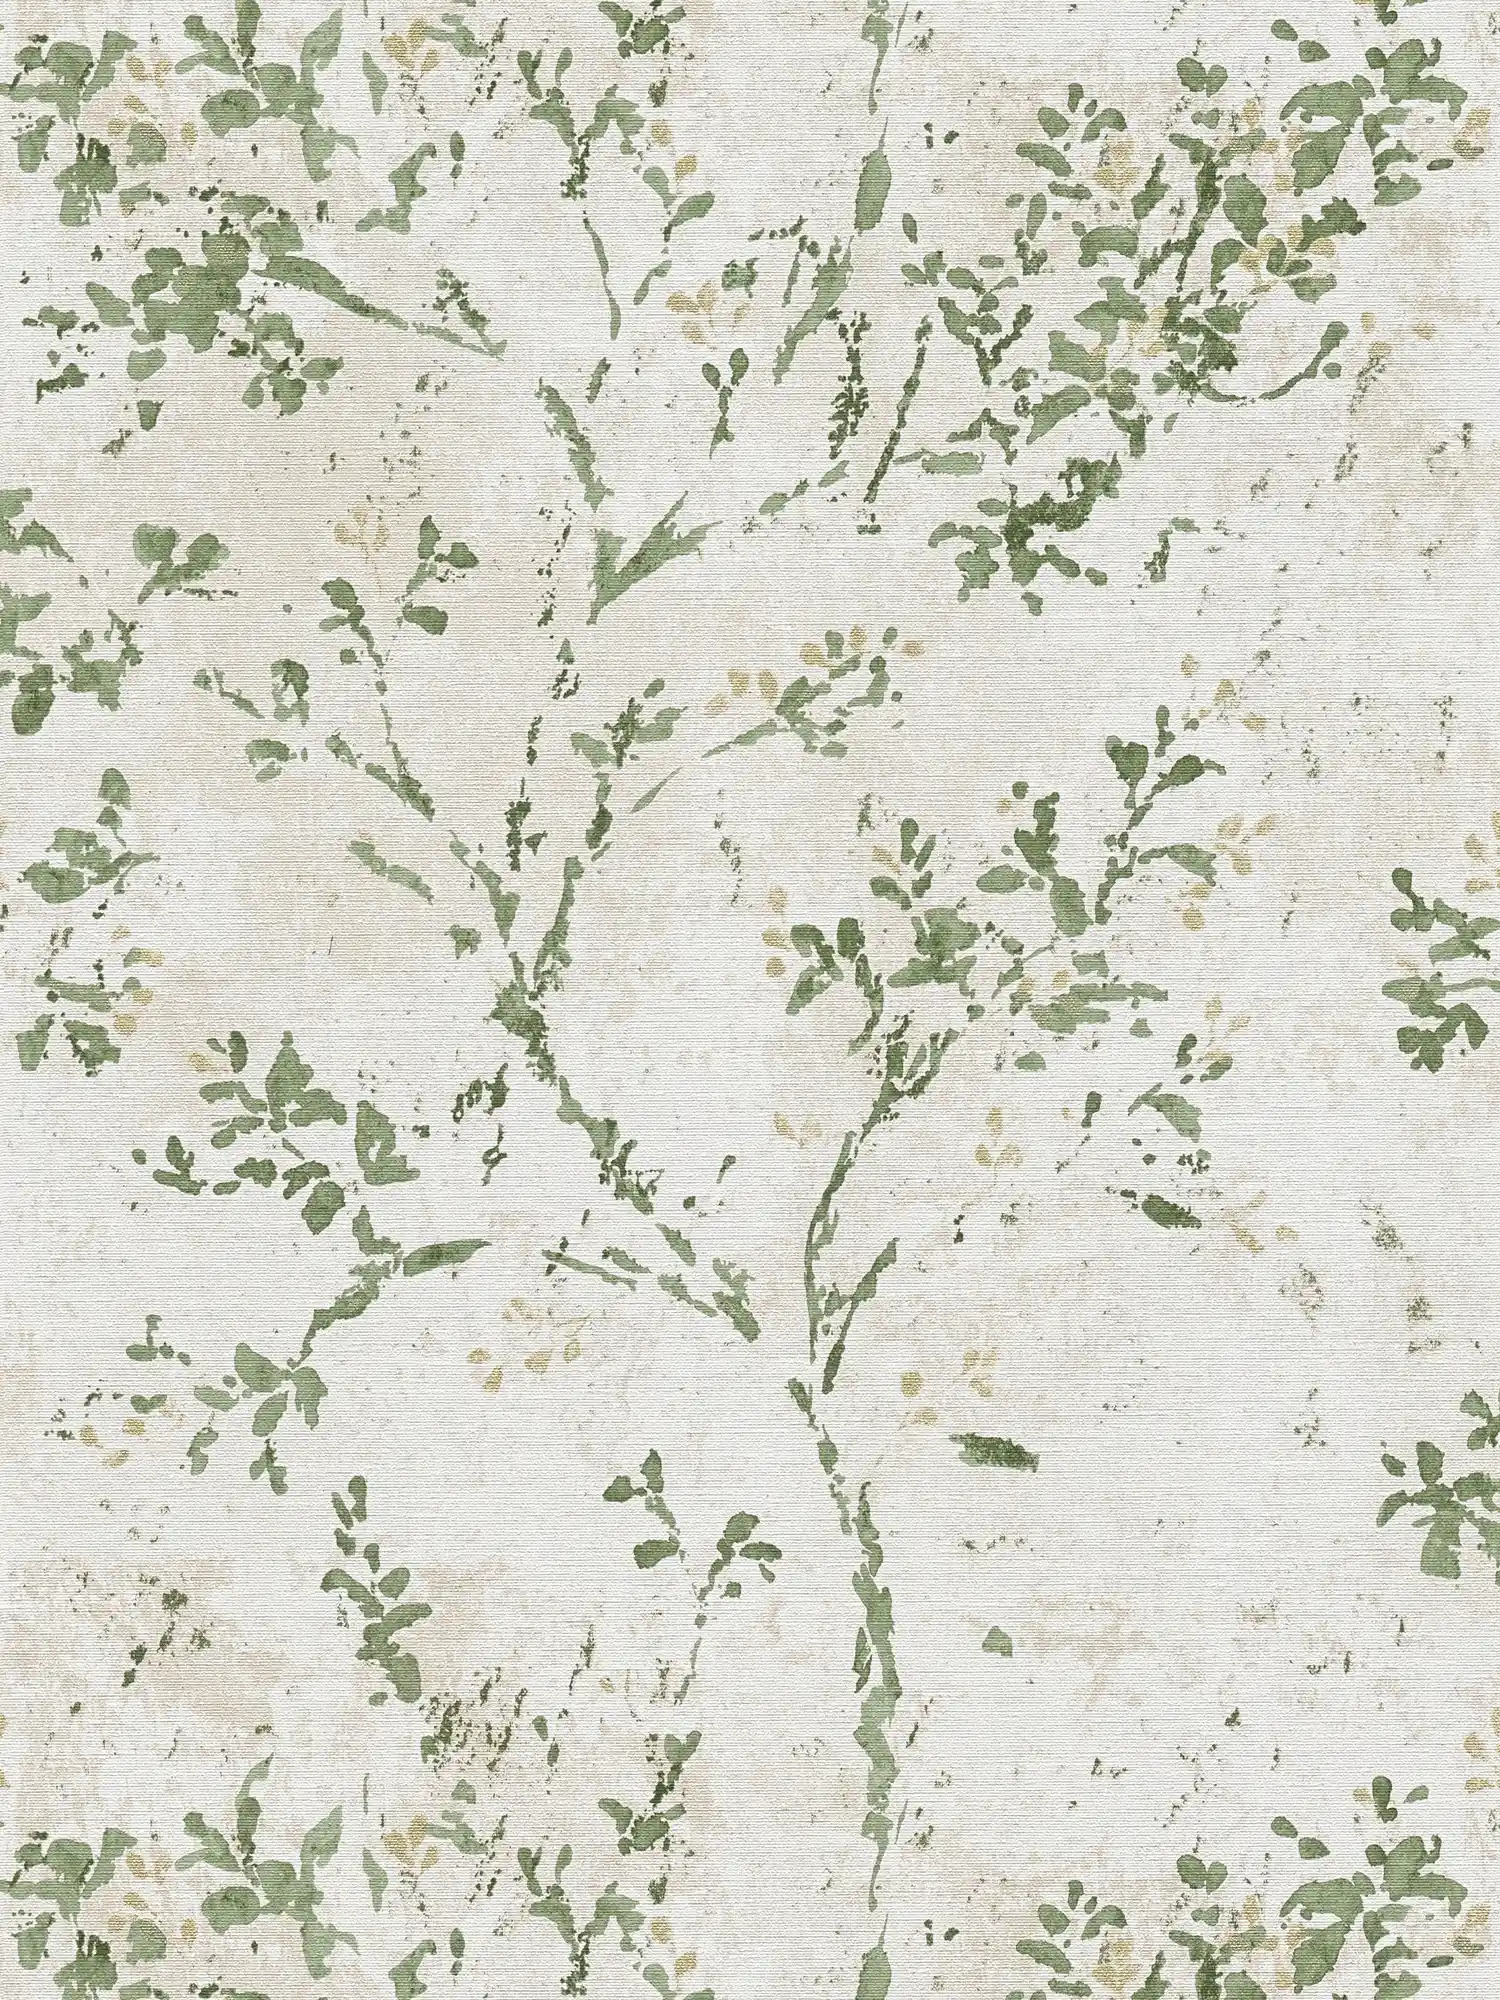 papier peint en papier intissé avec motifs floraux ludiques - beige, vert, or
